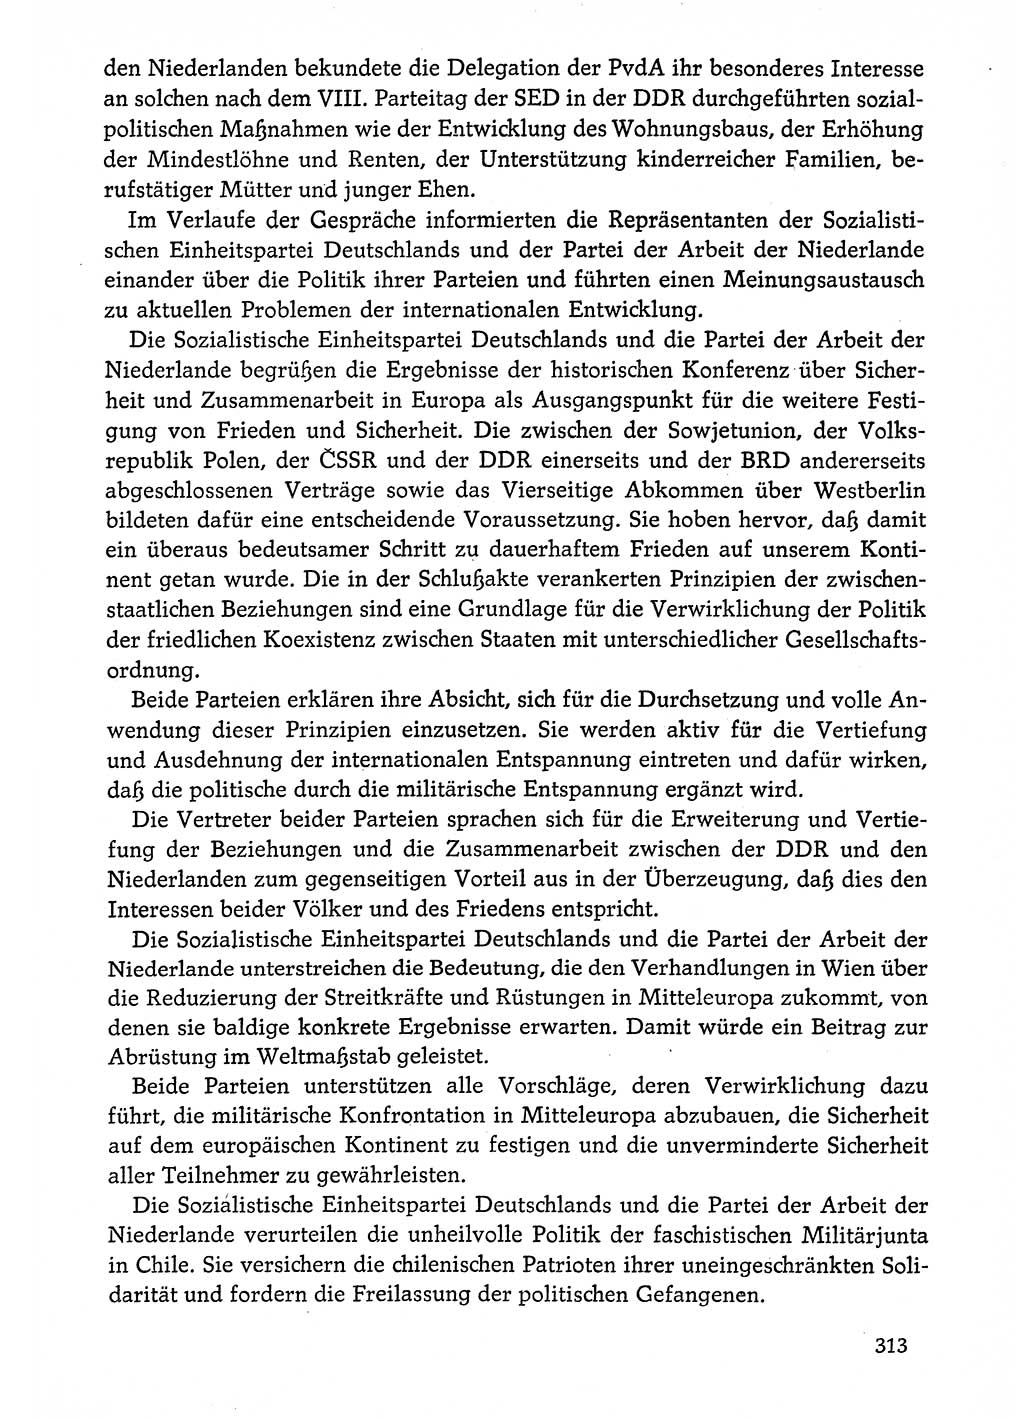 Dokumente der Sozialistischen Einheitspartei Deutschlands (SED) [Deutsche Demokratische Republik (DDR)] 1974-1975, Seite 313 (Dok. SED DDR 1978, Bd. ⅩⅤ, S. 313)